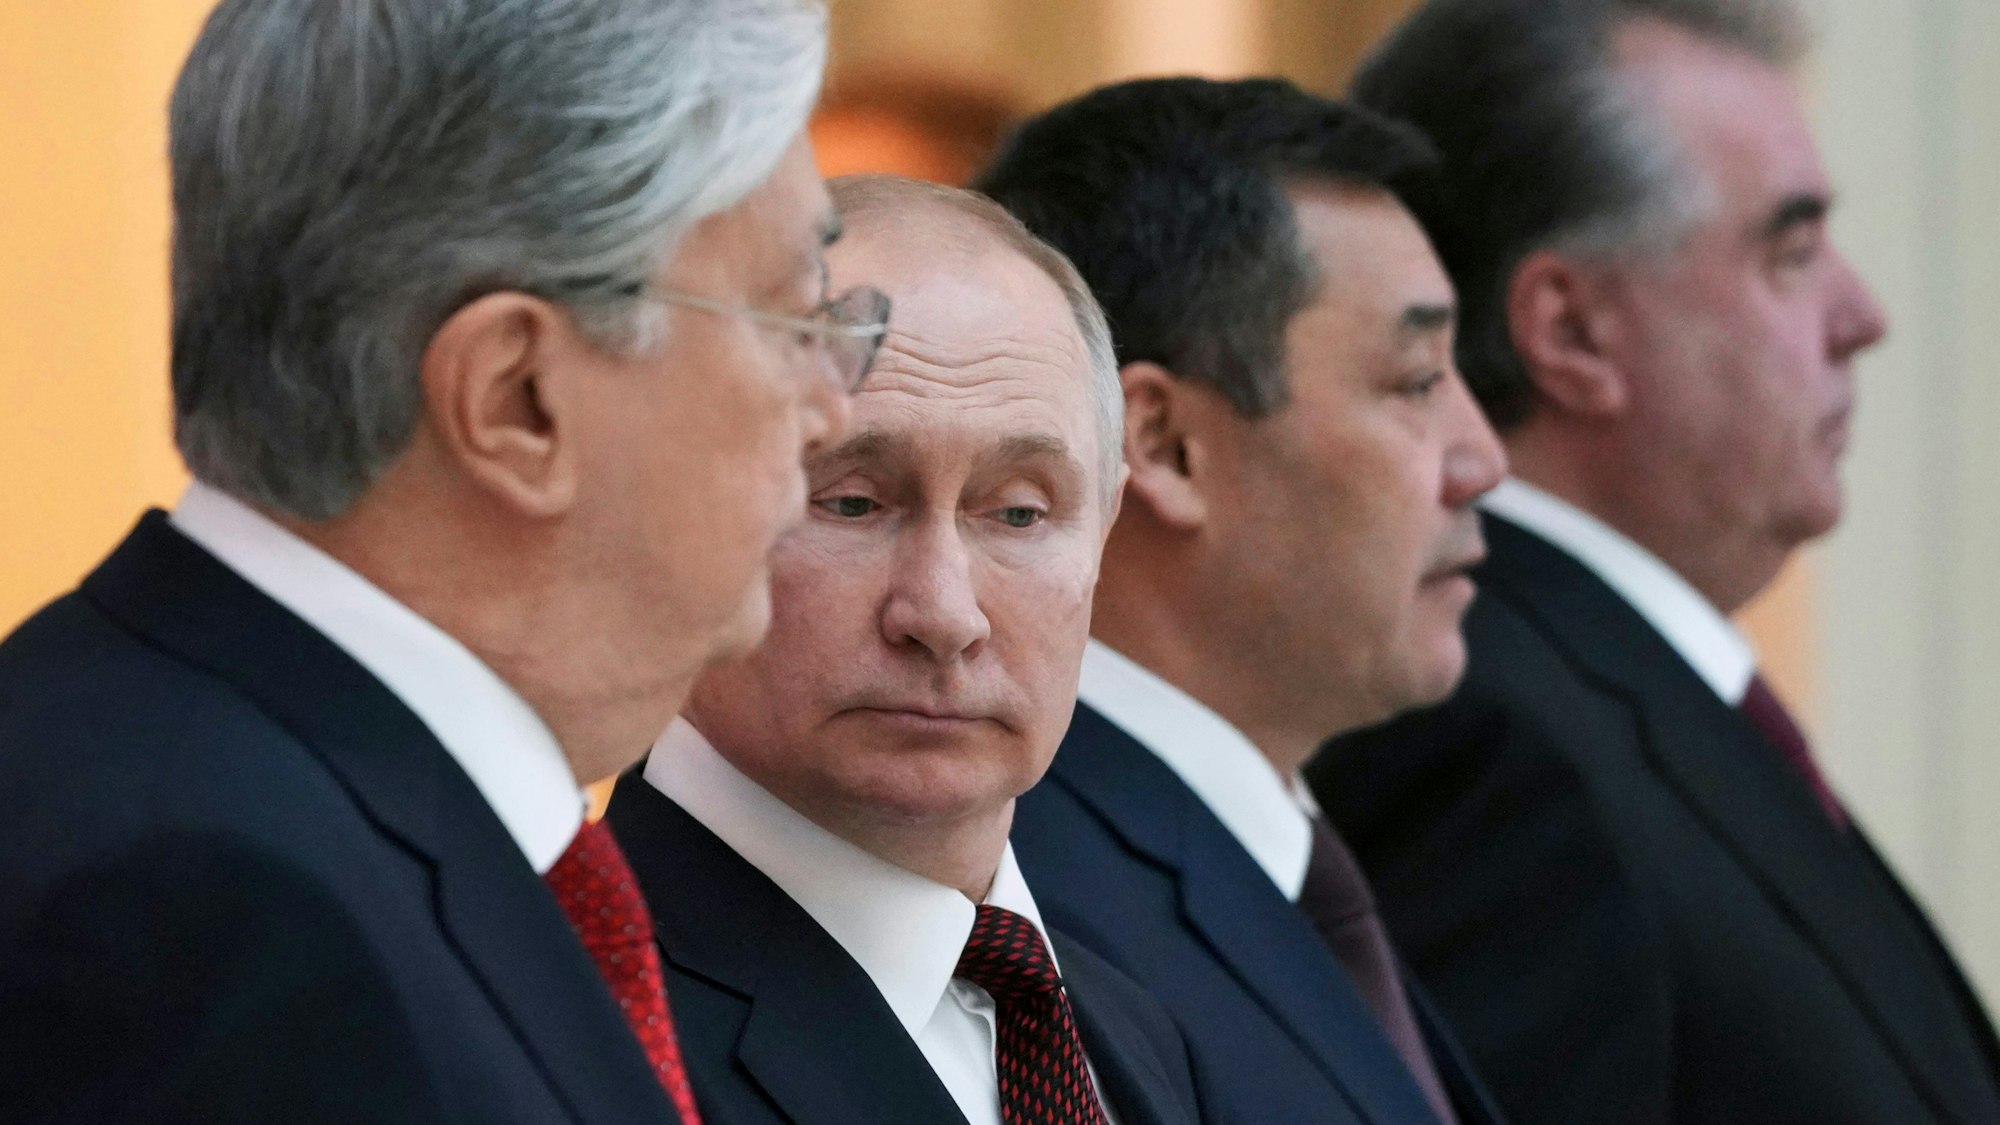 Das Foto zeigt Wladimir Putin (2.v.l), Präsident von Russland, bei einem informellen Treffen der Staatsoberhäupter der ehemaligen sowjetischen Staaten. Putin schaut skeptisch in Richtung Boden. (Symbolbild)